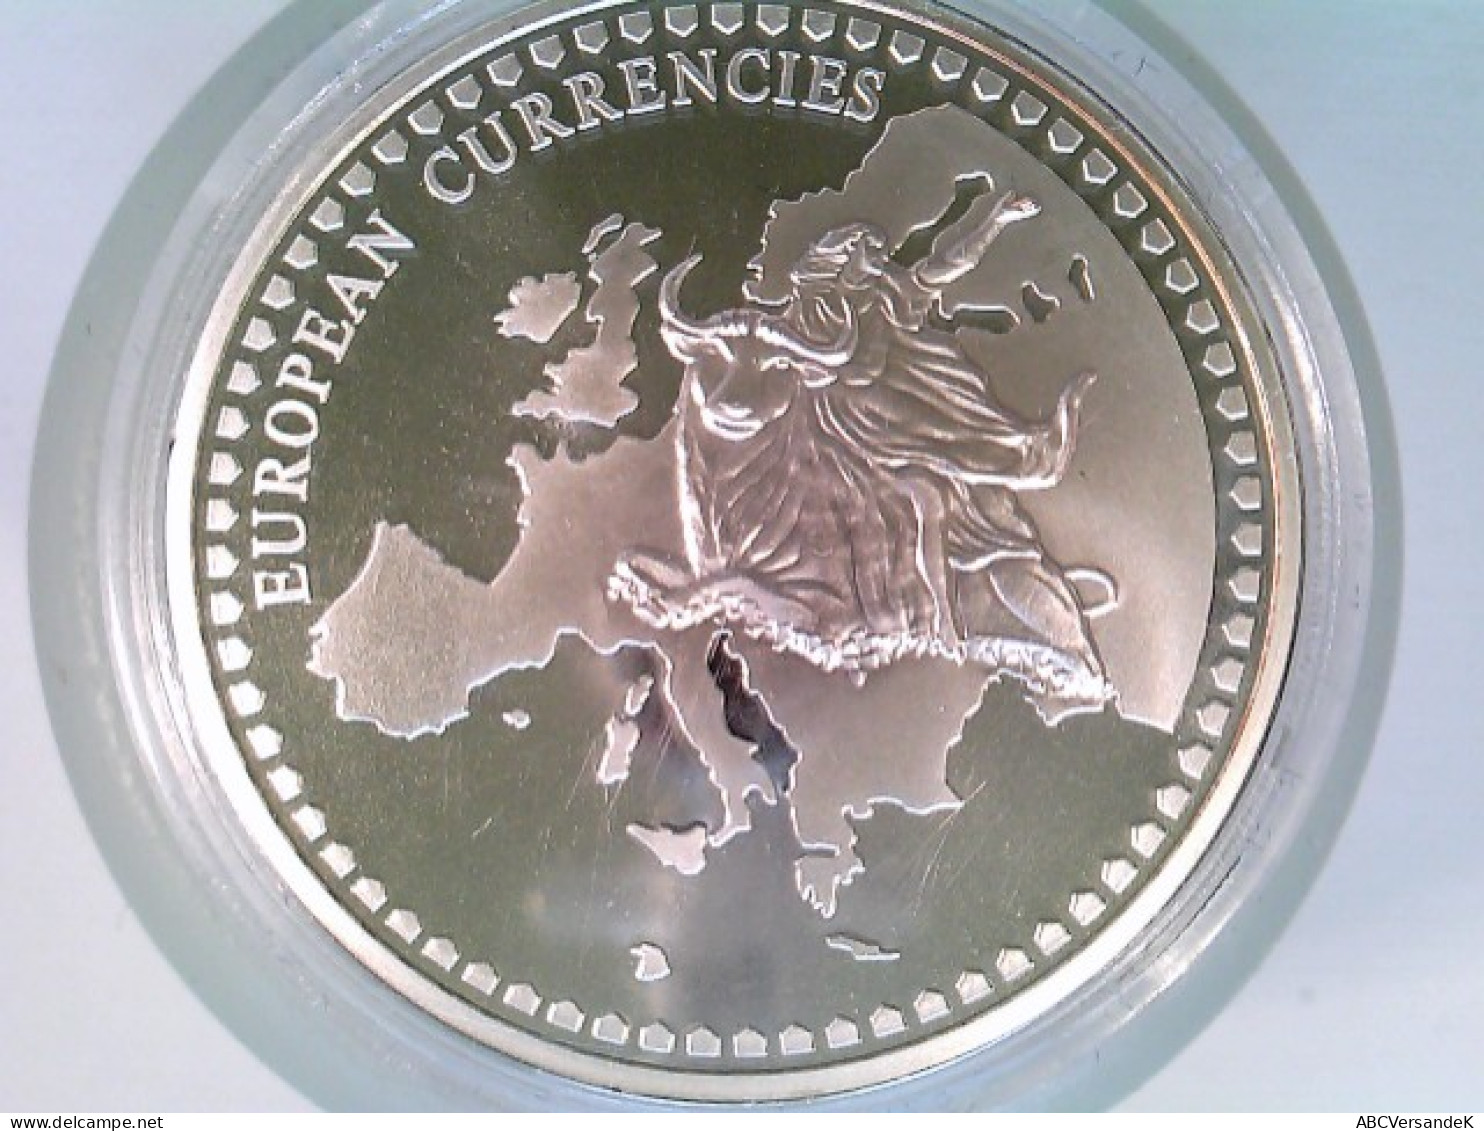 Münze/Medaille, Inlay-Prägung Österreich, Sammlermünze 1996, CU Versilbert Mit Vergoldetem Inlay - Numismatics